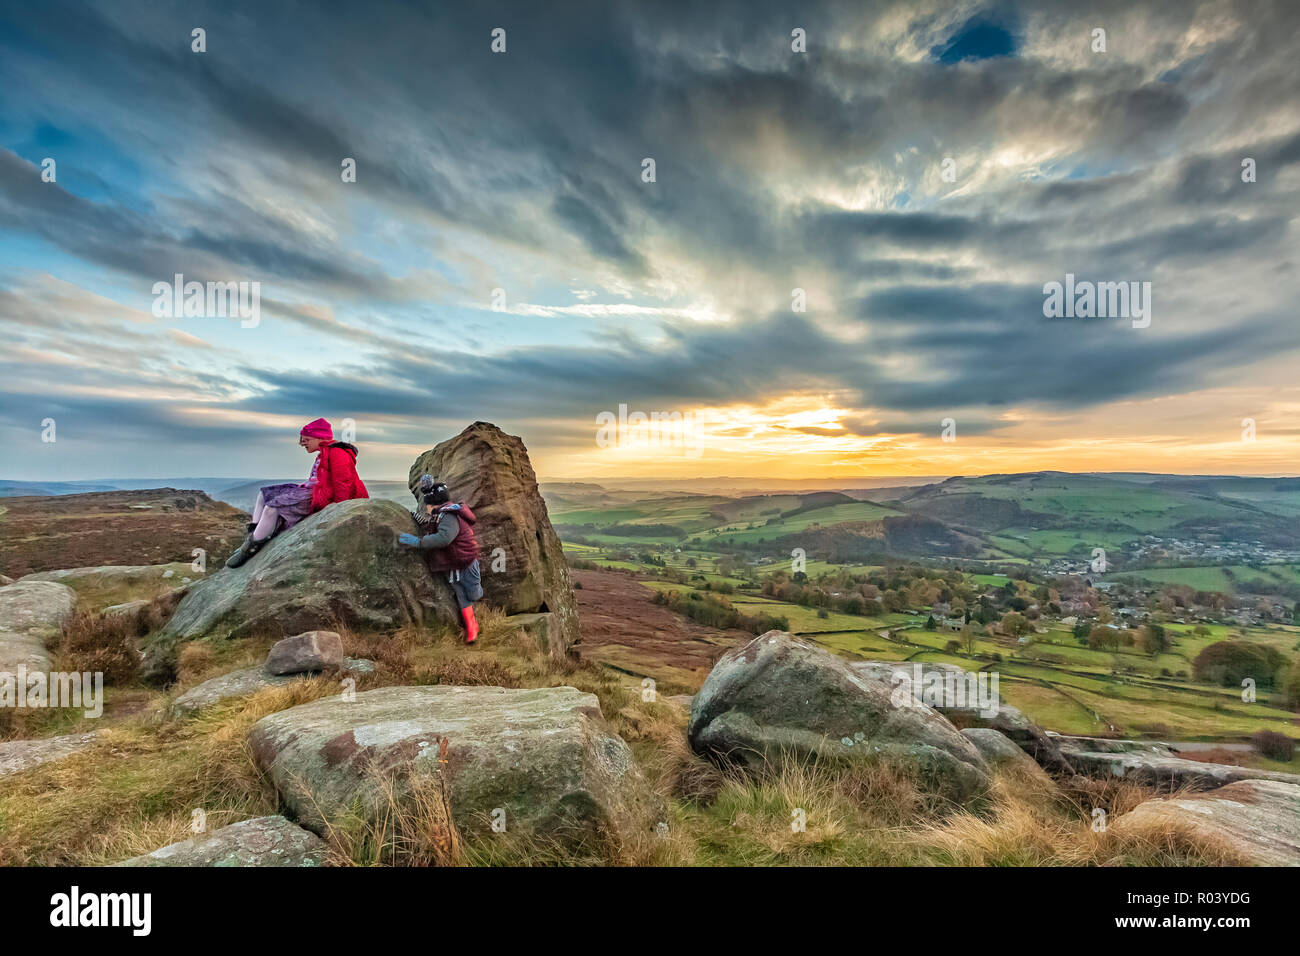 Beau paysage photographie d'enfants jouant sur les rochers coucher du soleil à Curbar Edge, parc national de Peak District, Derbyshire, Angleterre Octobre 2018 Banque D'Images